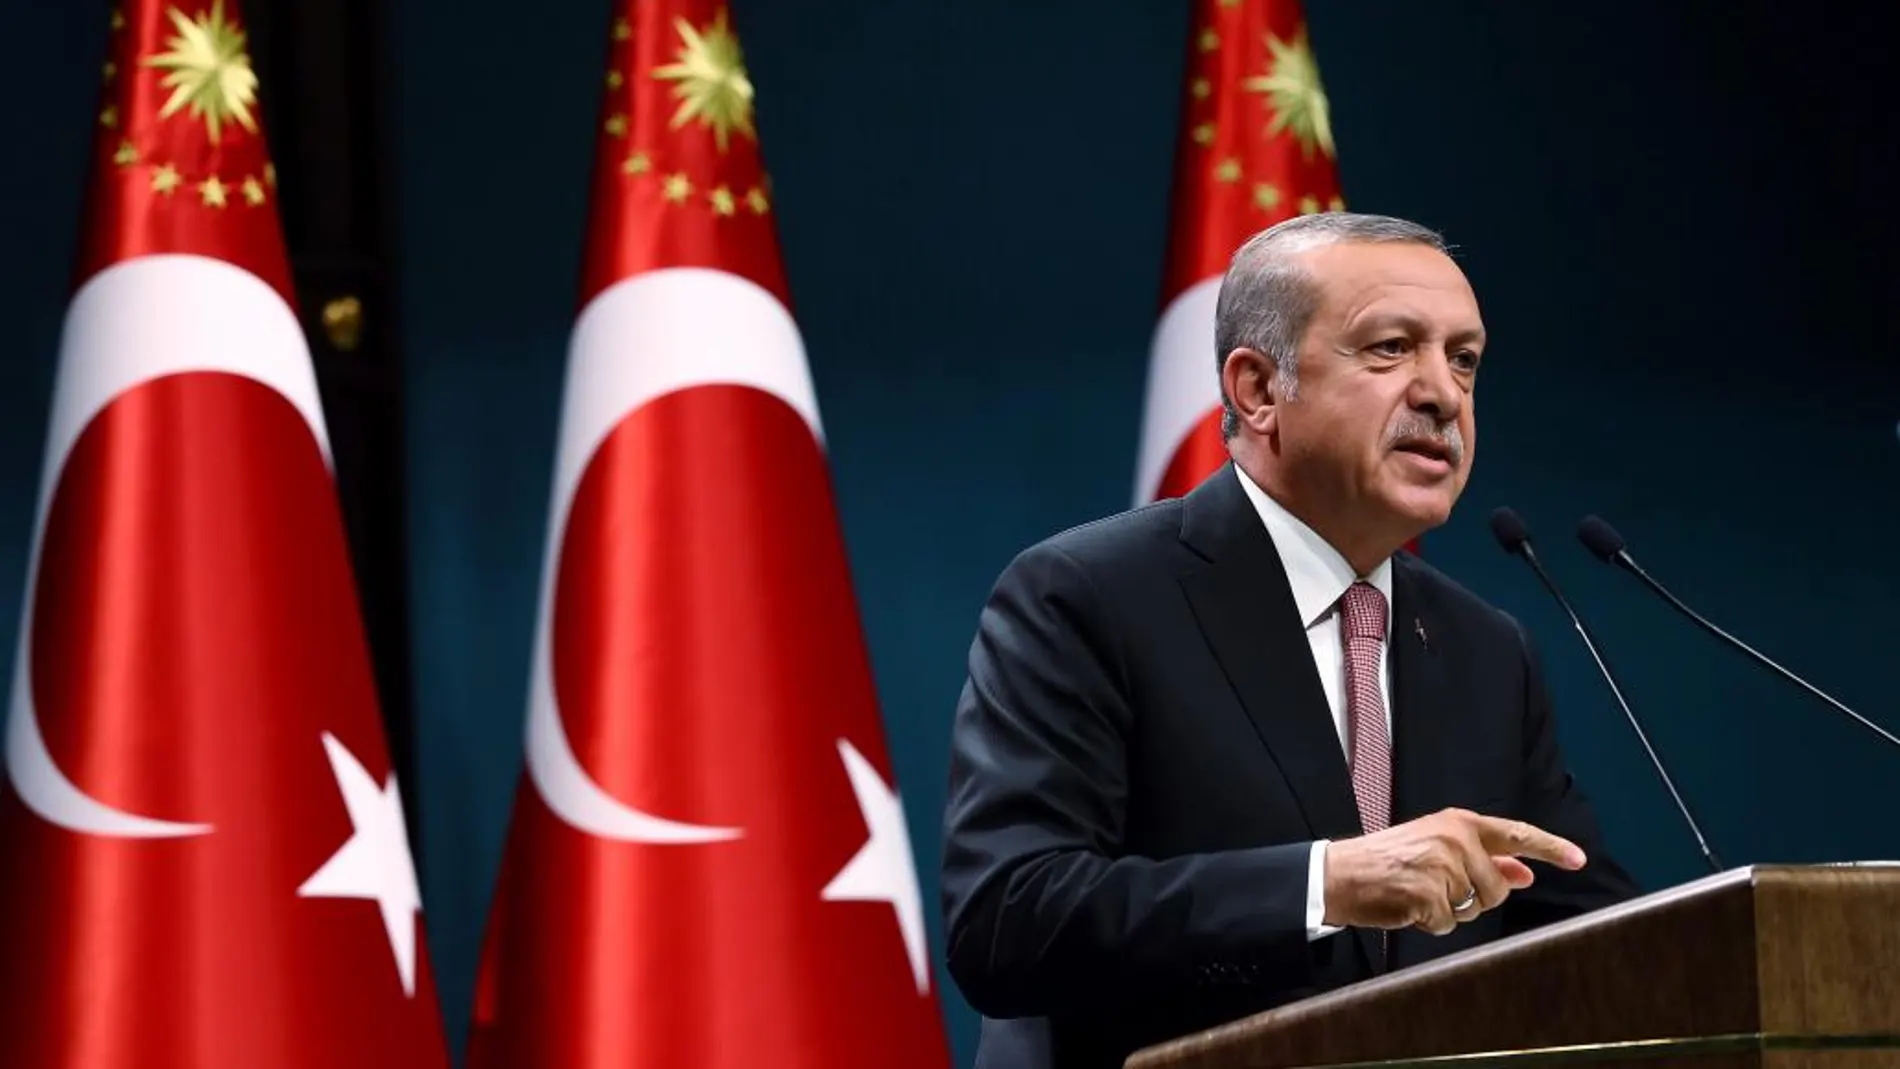 Fotografía cedida por la Oficina de Prensa de la Presidencia de Turquía, del presidente turco, Recep Tayyip Erdogan, hablando durante una conferencia de prensa tras una reunión de su gabinete en Ankara